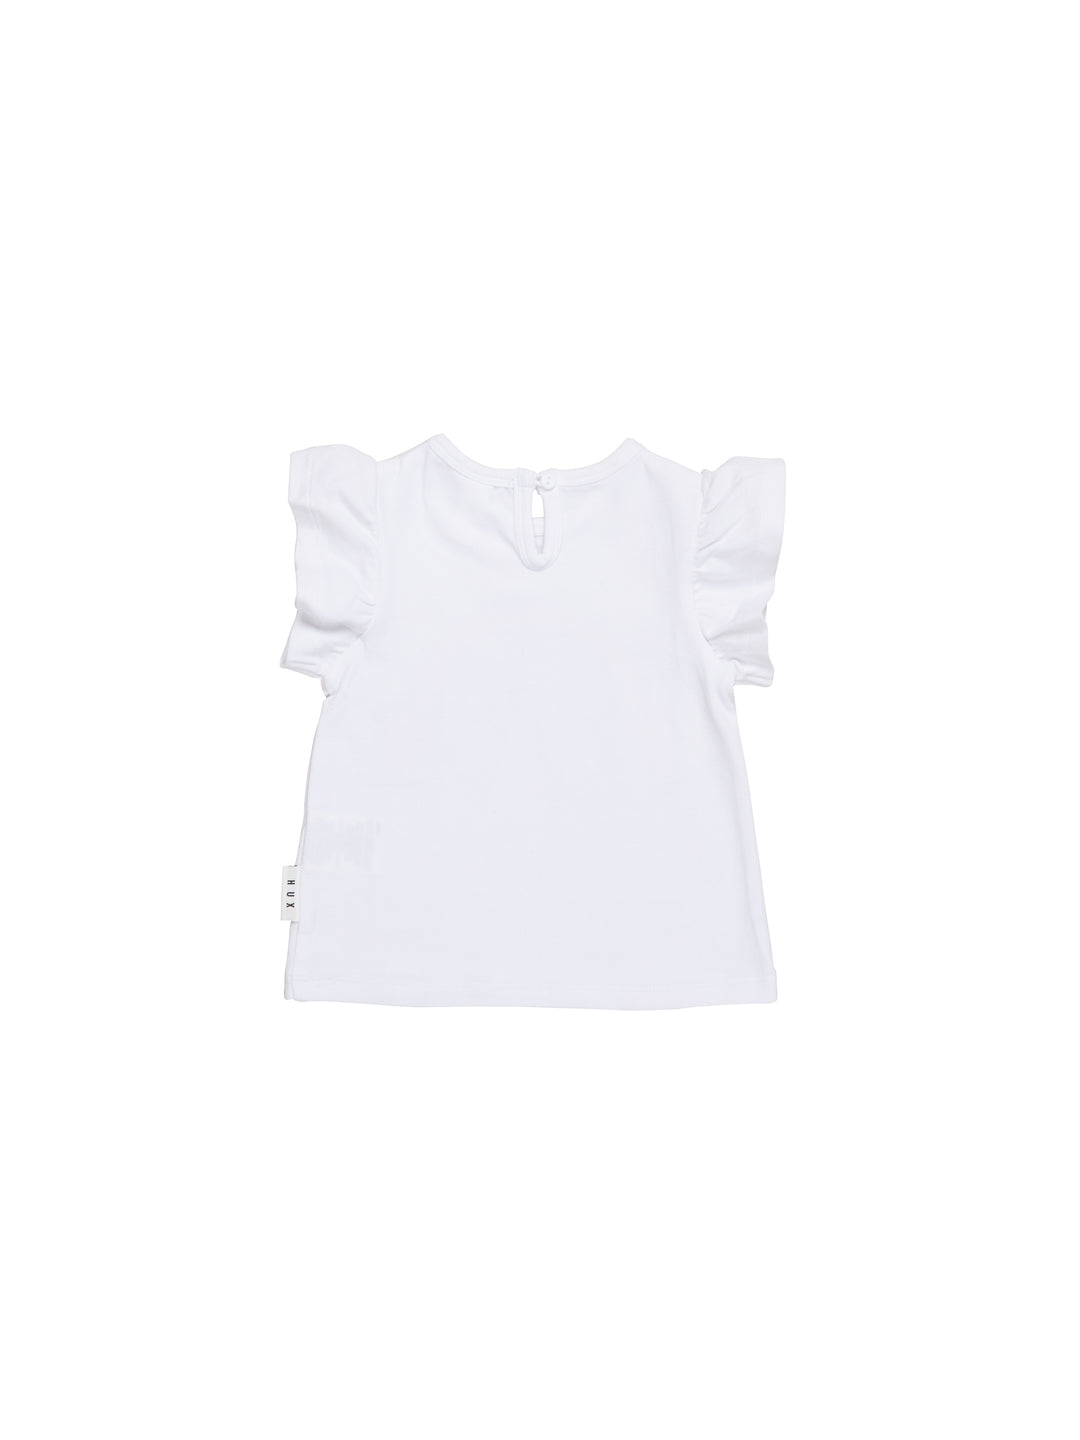 Huxbaby Rainbow Frill T-Shirt - White